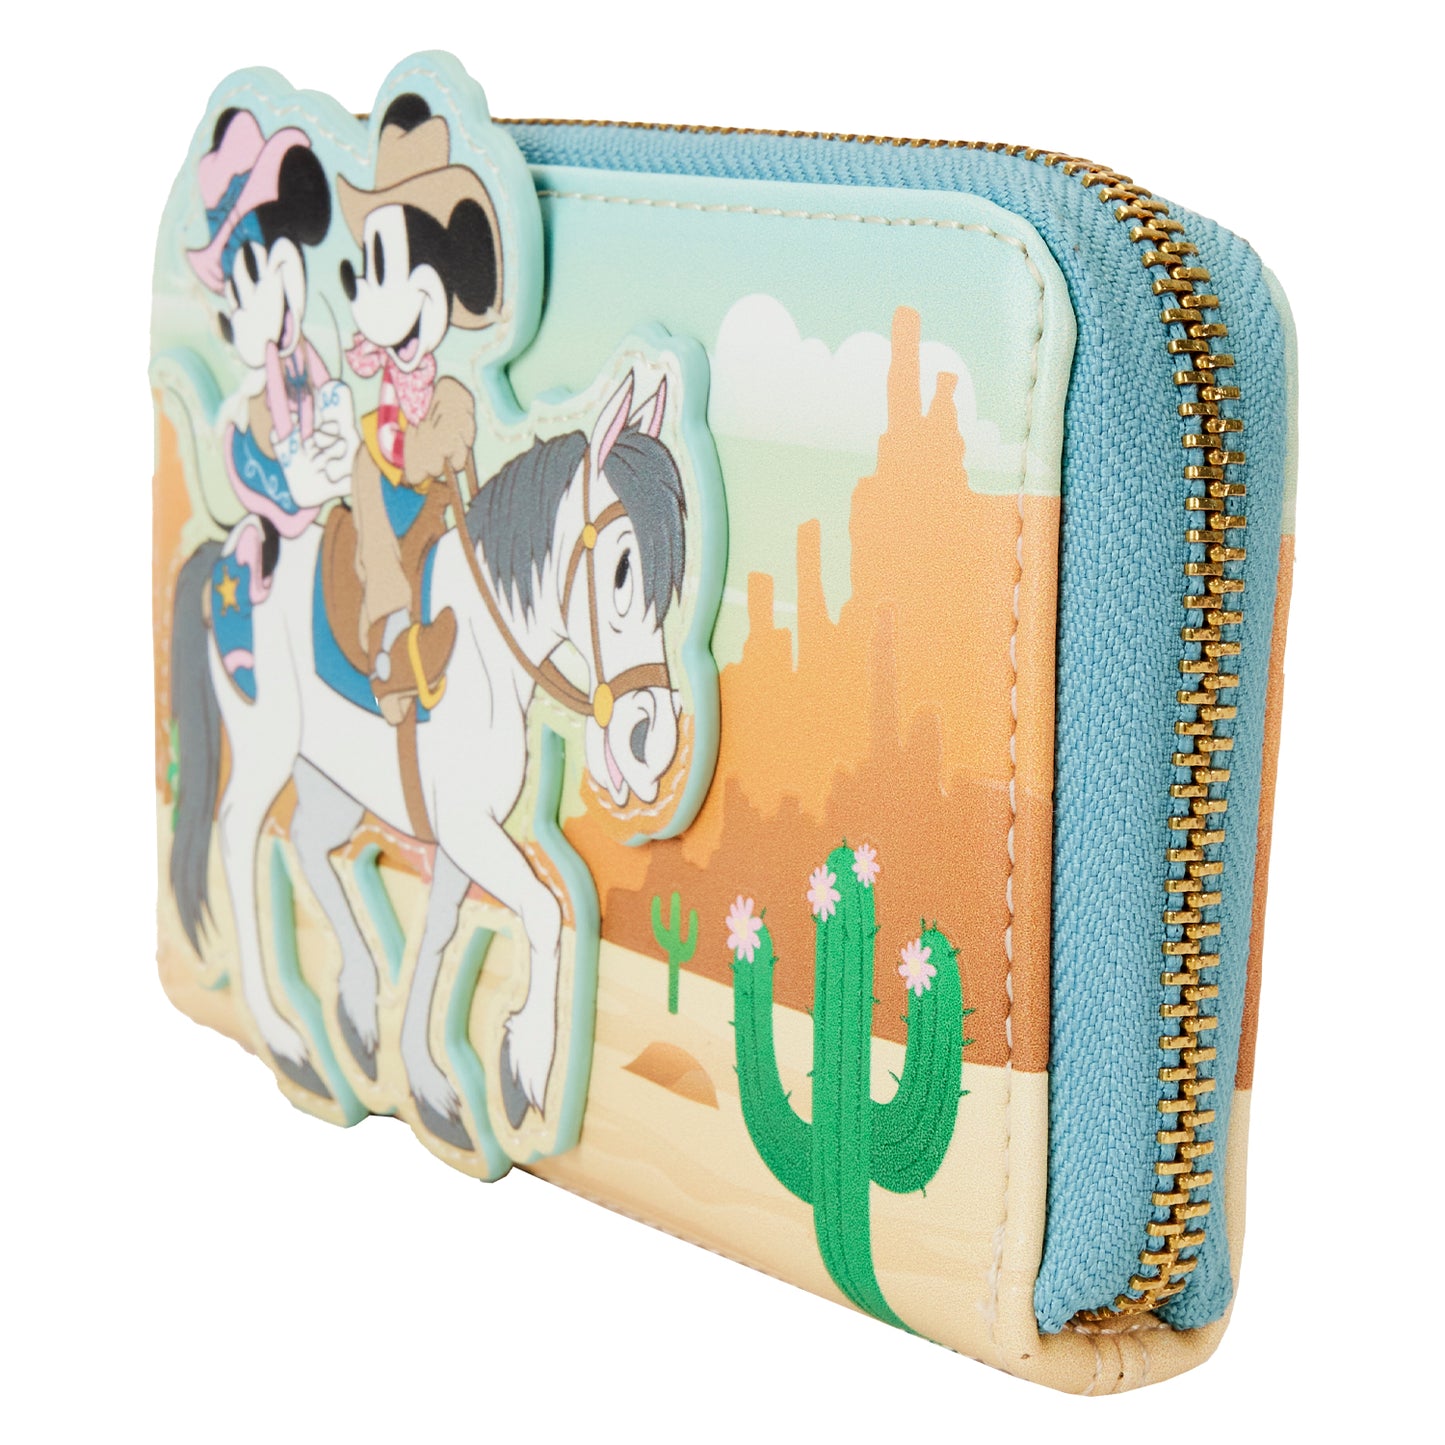 Western Mickey & Minnie Zip Around Wallet